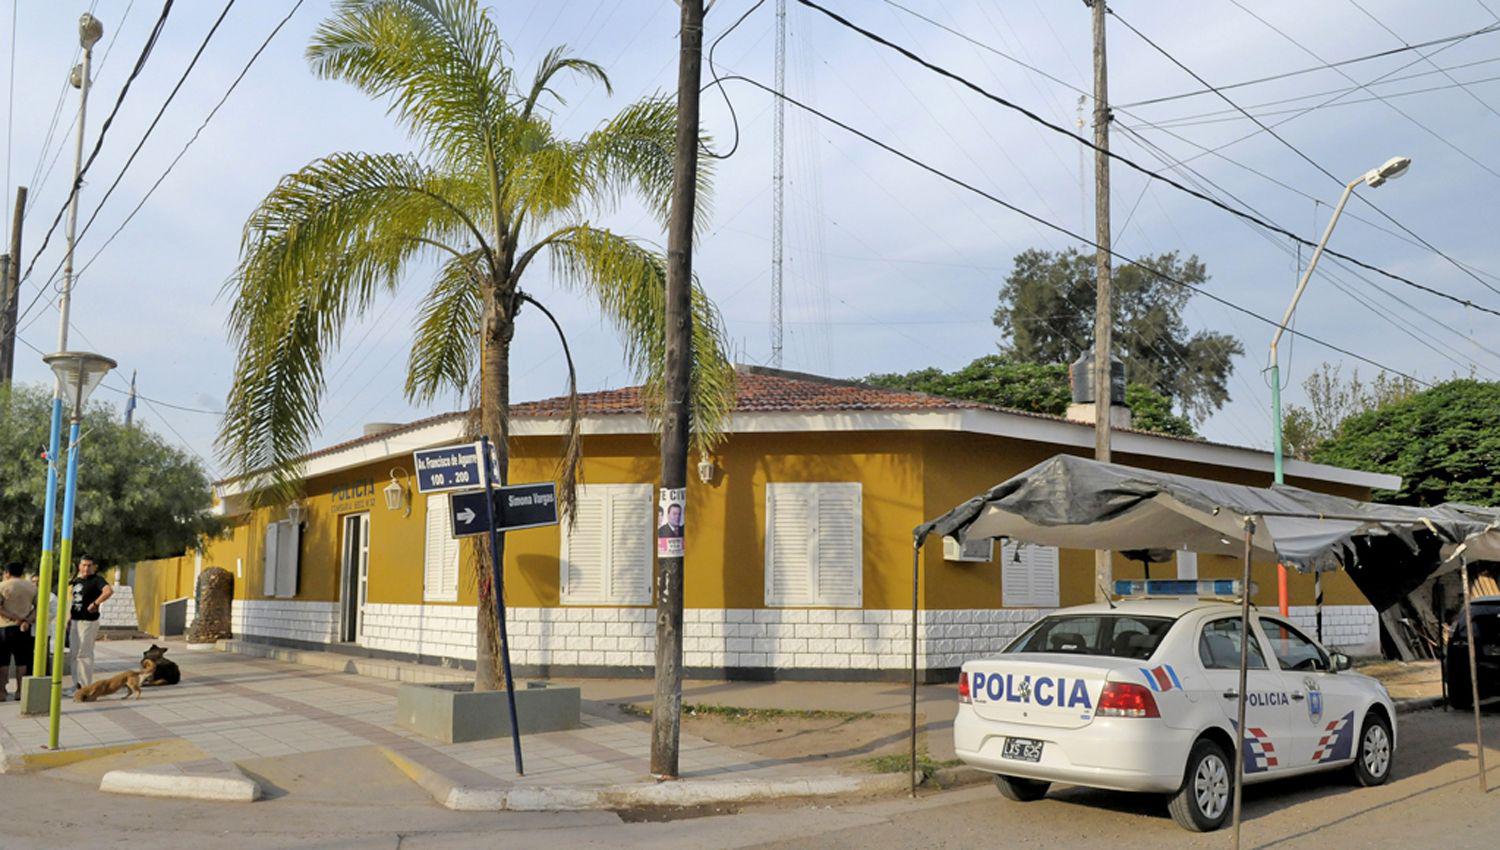 Garnica ya est� preso por un operativo a cargo de la Seccional 32 de Nueva Esperanza